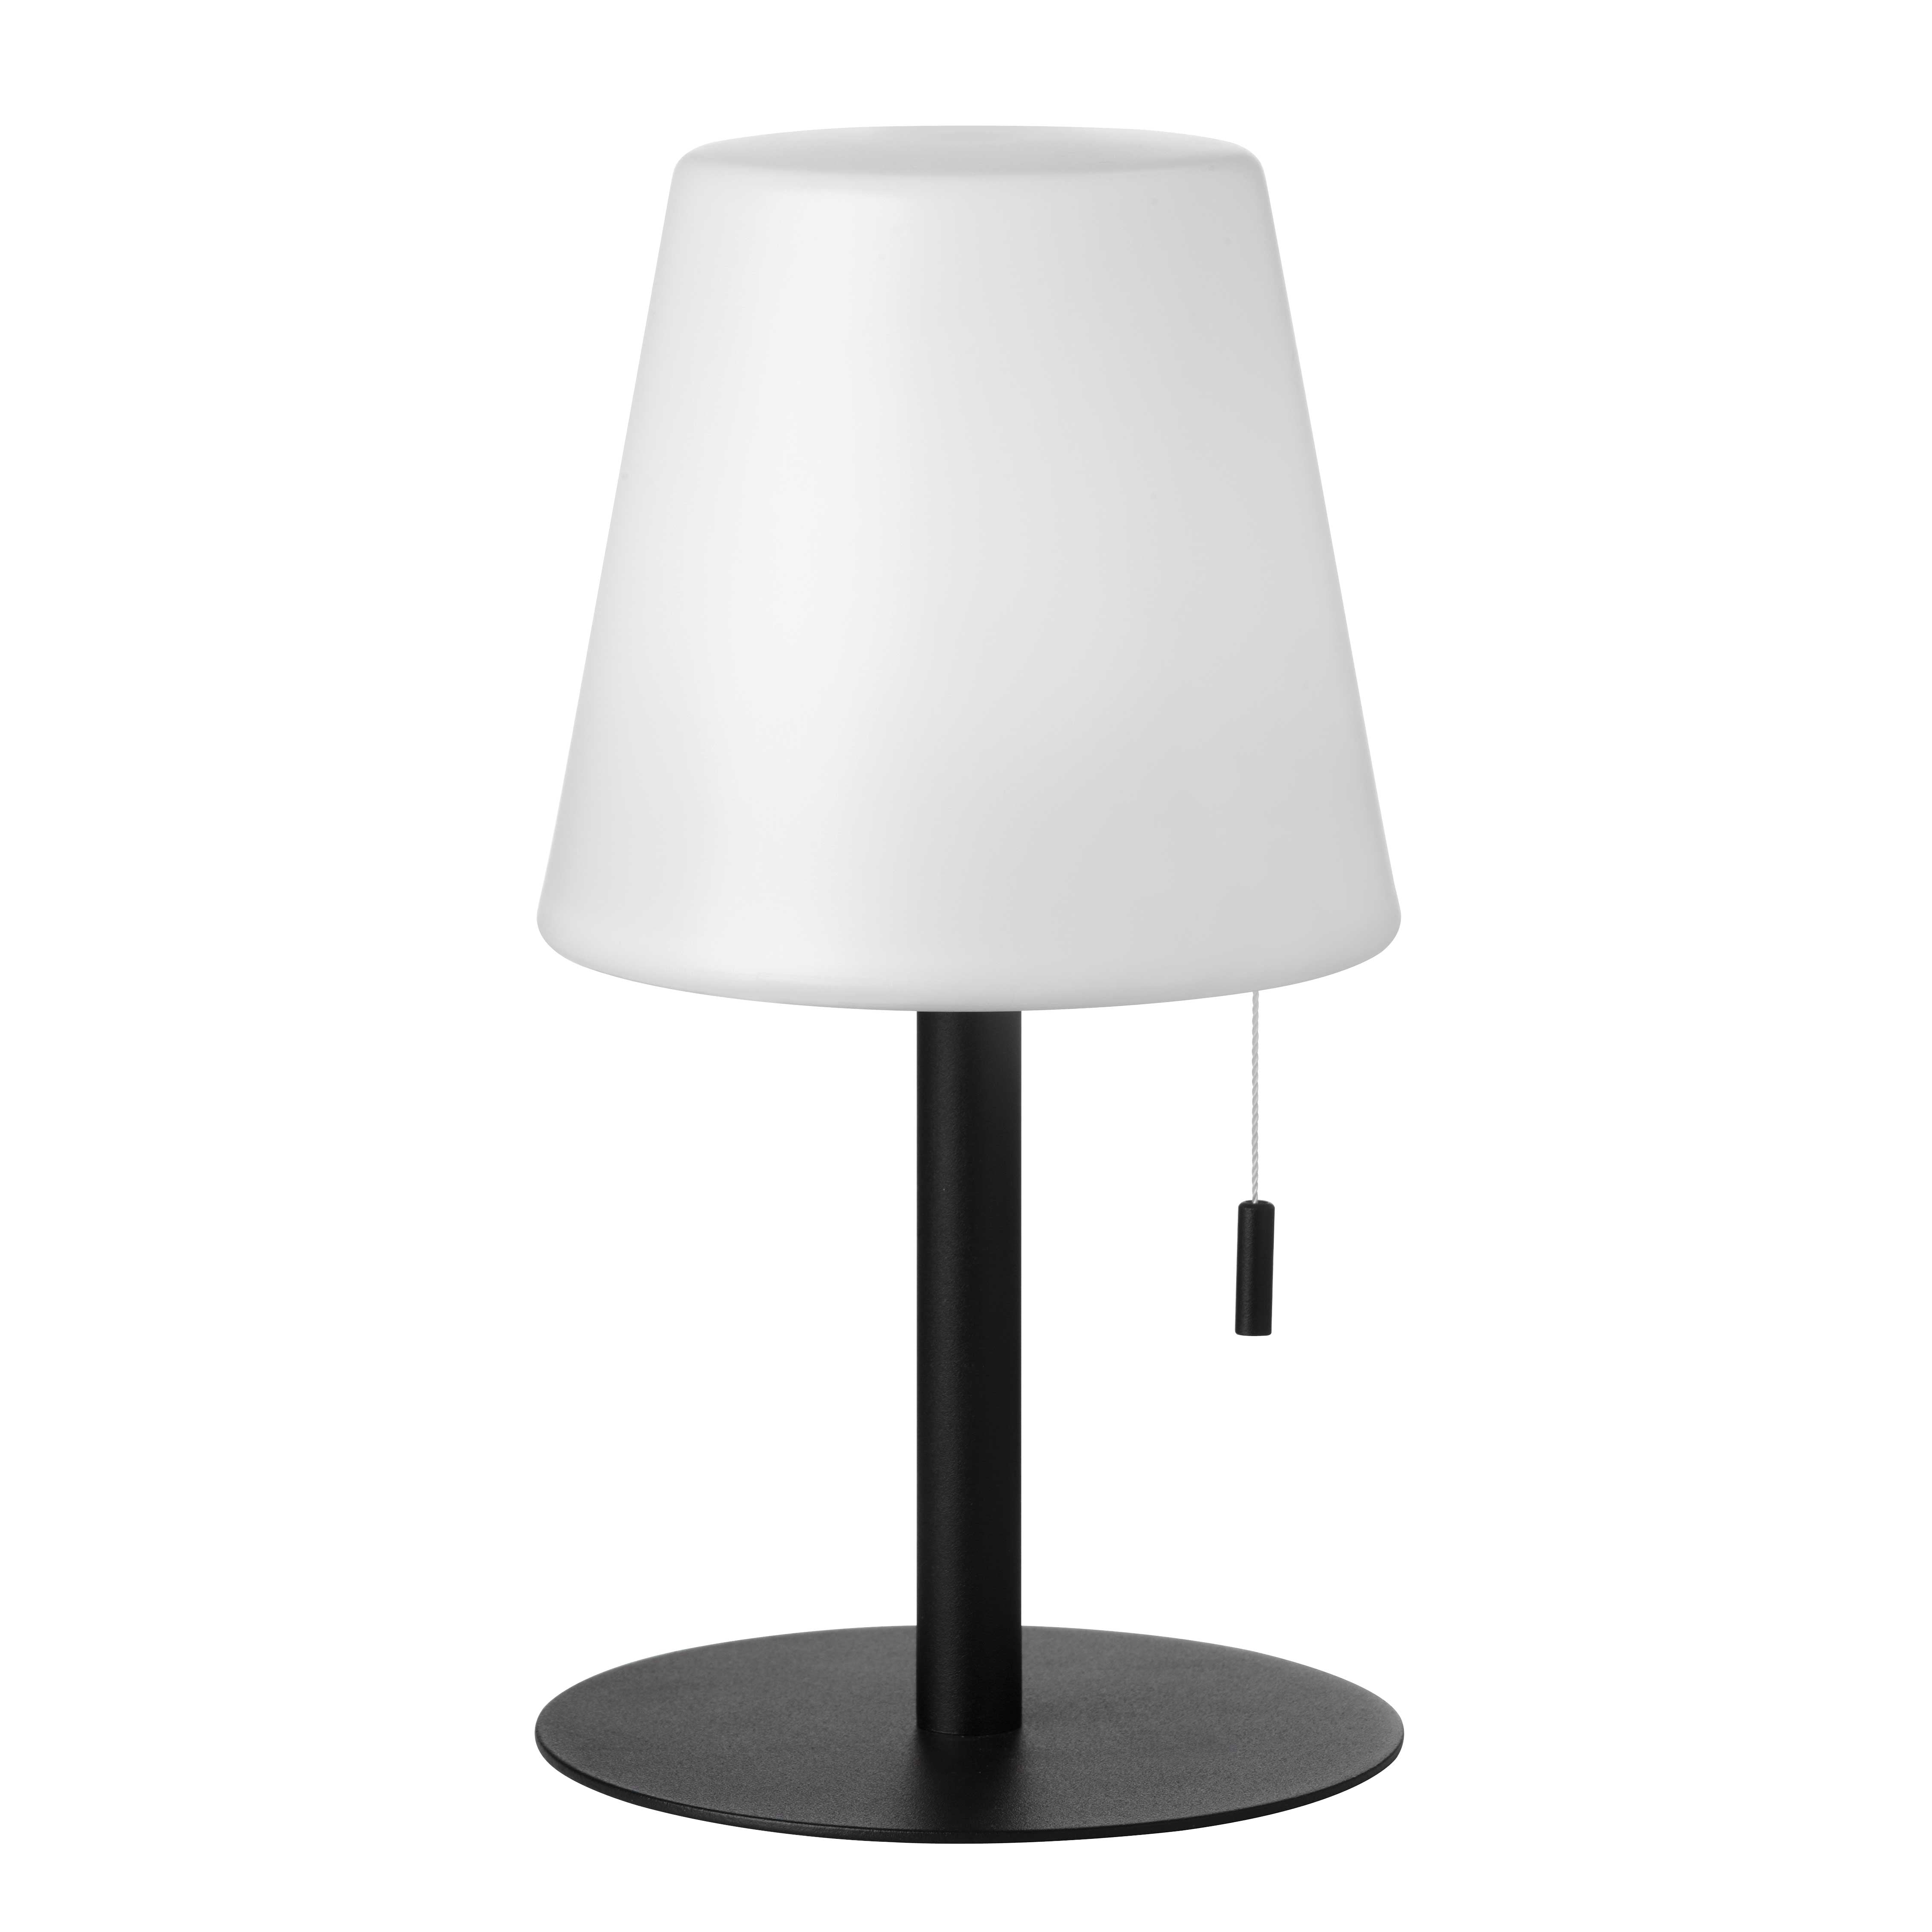 TINSLEY Lampe sur table Blanc DEL INTÉGRÉ - TSY-113LEDT-MB | DAINOLITE